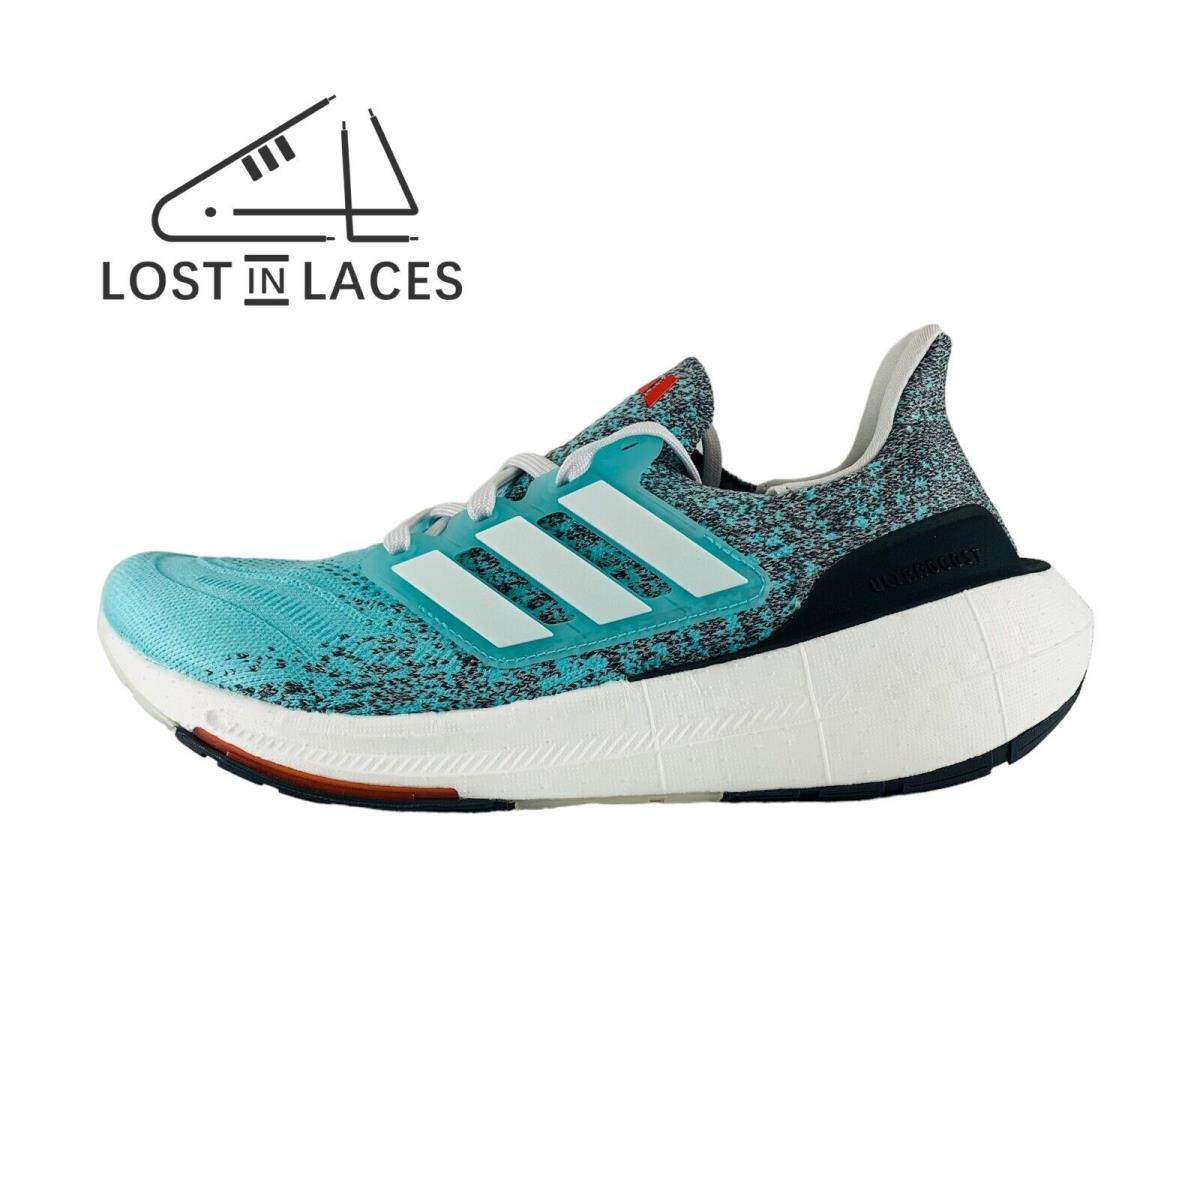 Adidas Ultraboost Light Aqua White Women`s Running Shoes IE1692 - Blue